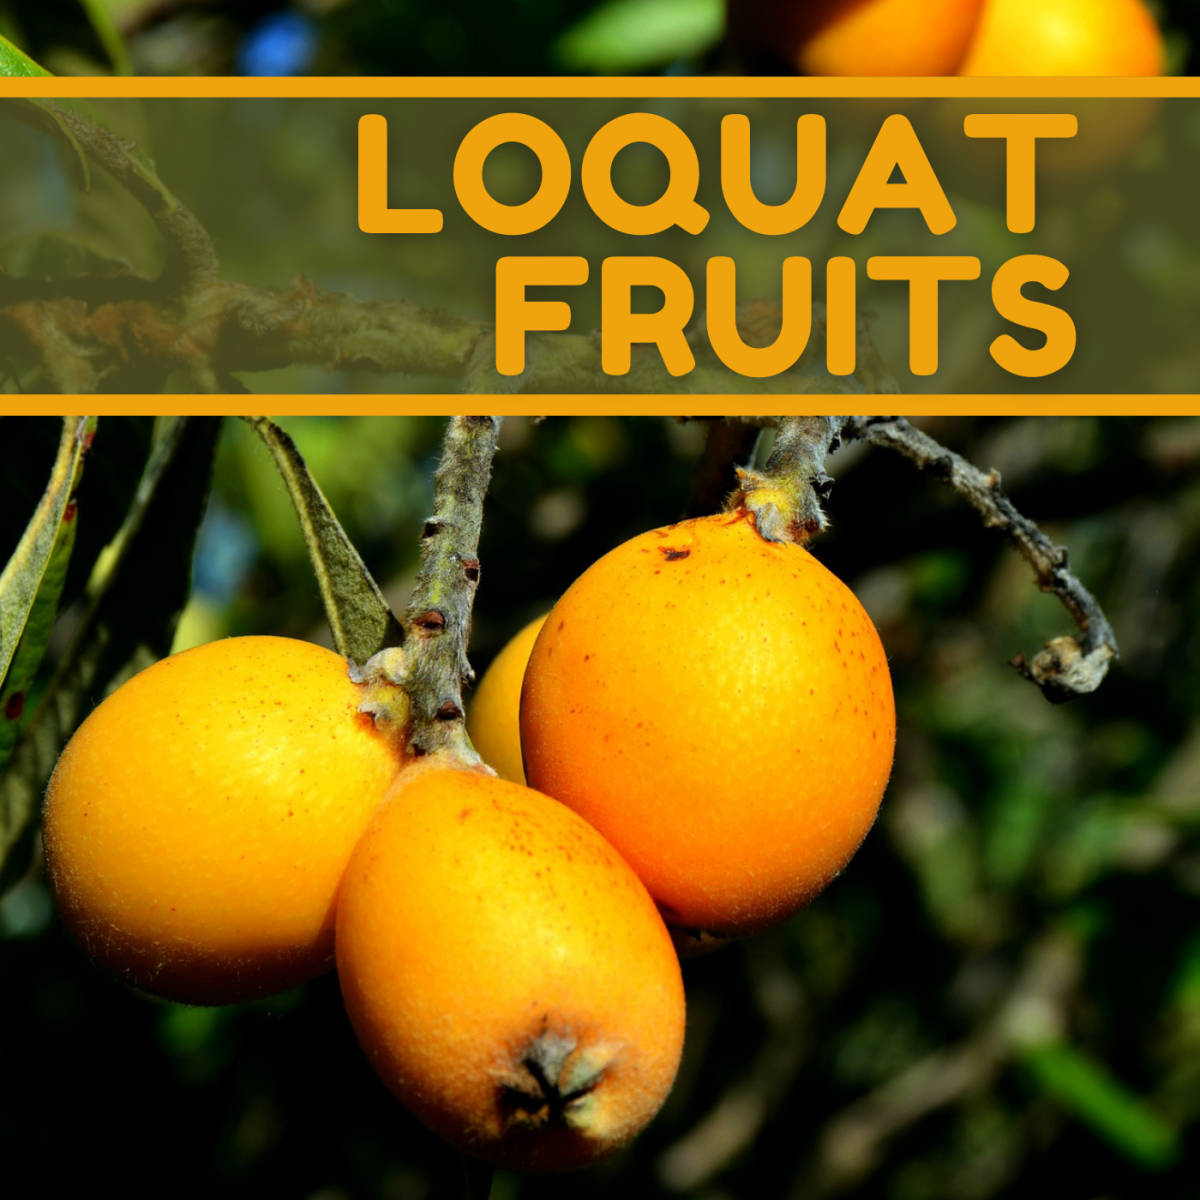 Loquat Fruits Poster Wallpaper